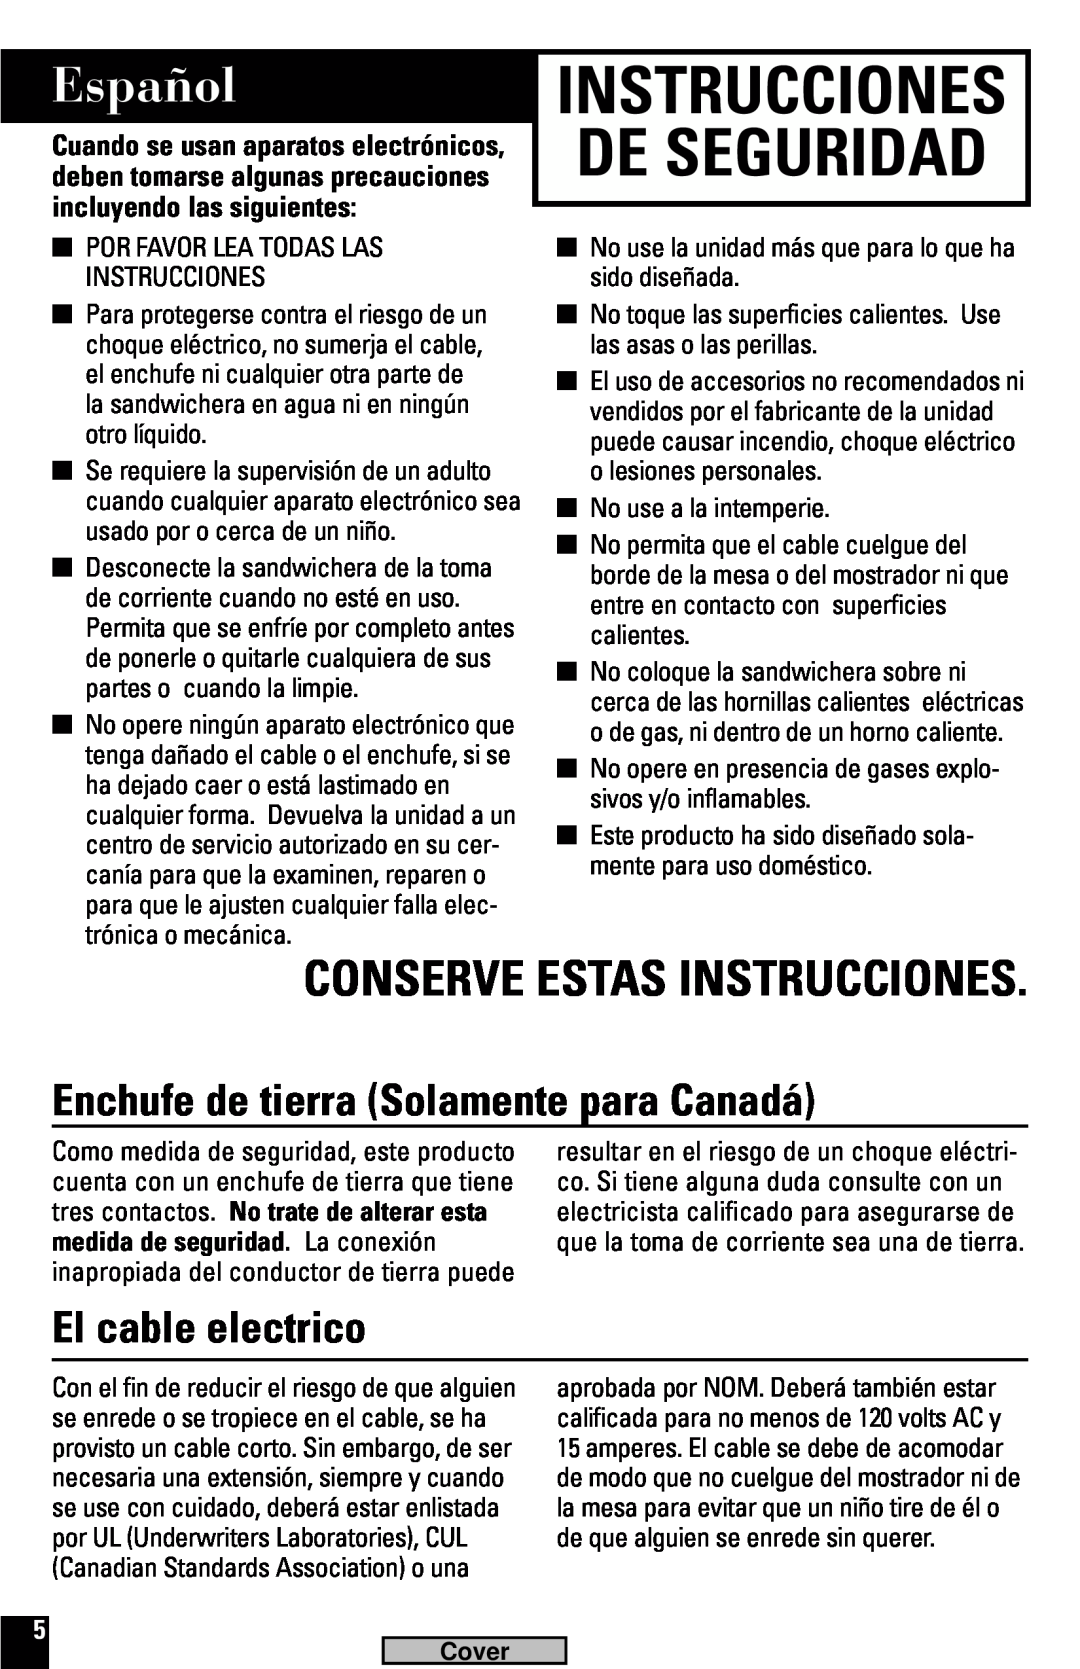 Black & Decker G100 Español, Conserve Estas Instrucciones, Enchufe de tierra Solamente para Canadá, El cable electrico 